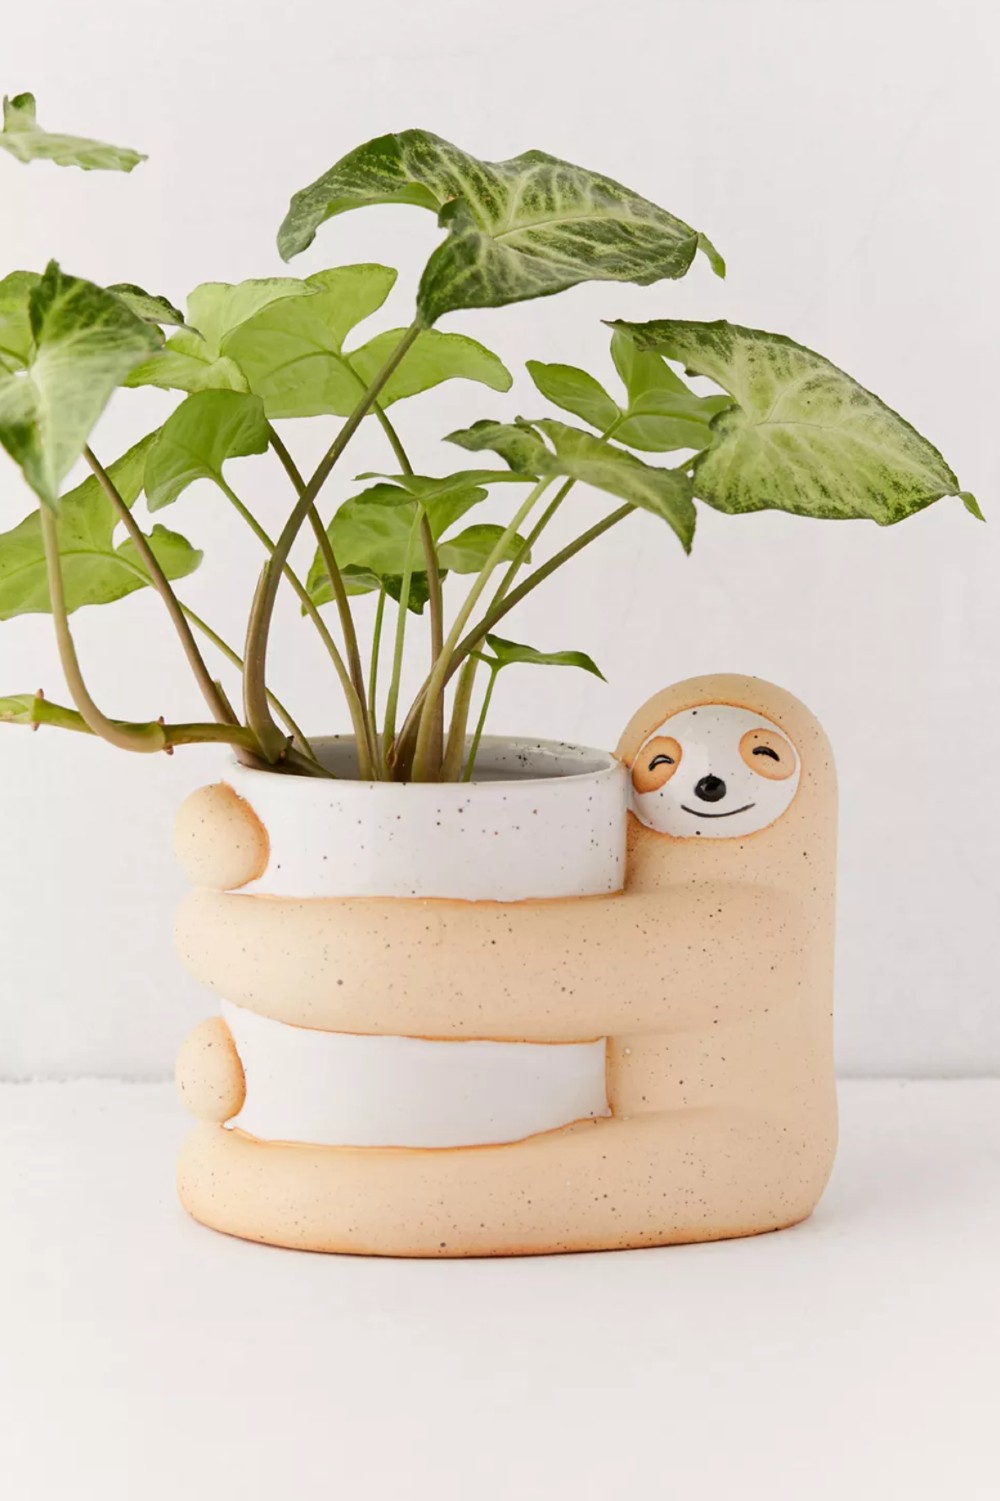 Sloth hugging a plant pot